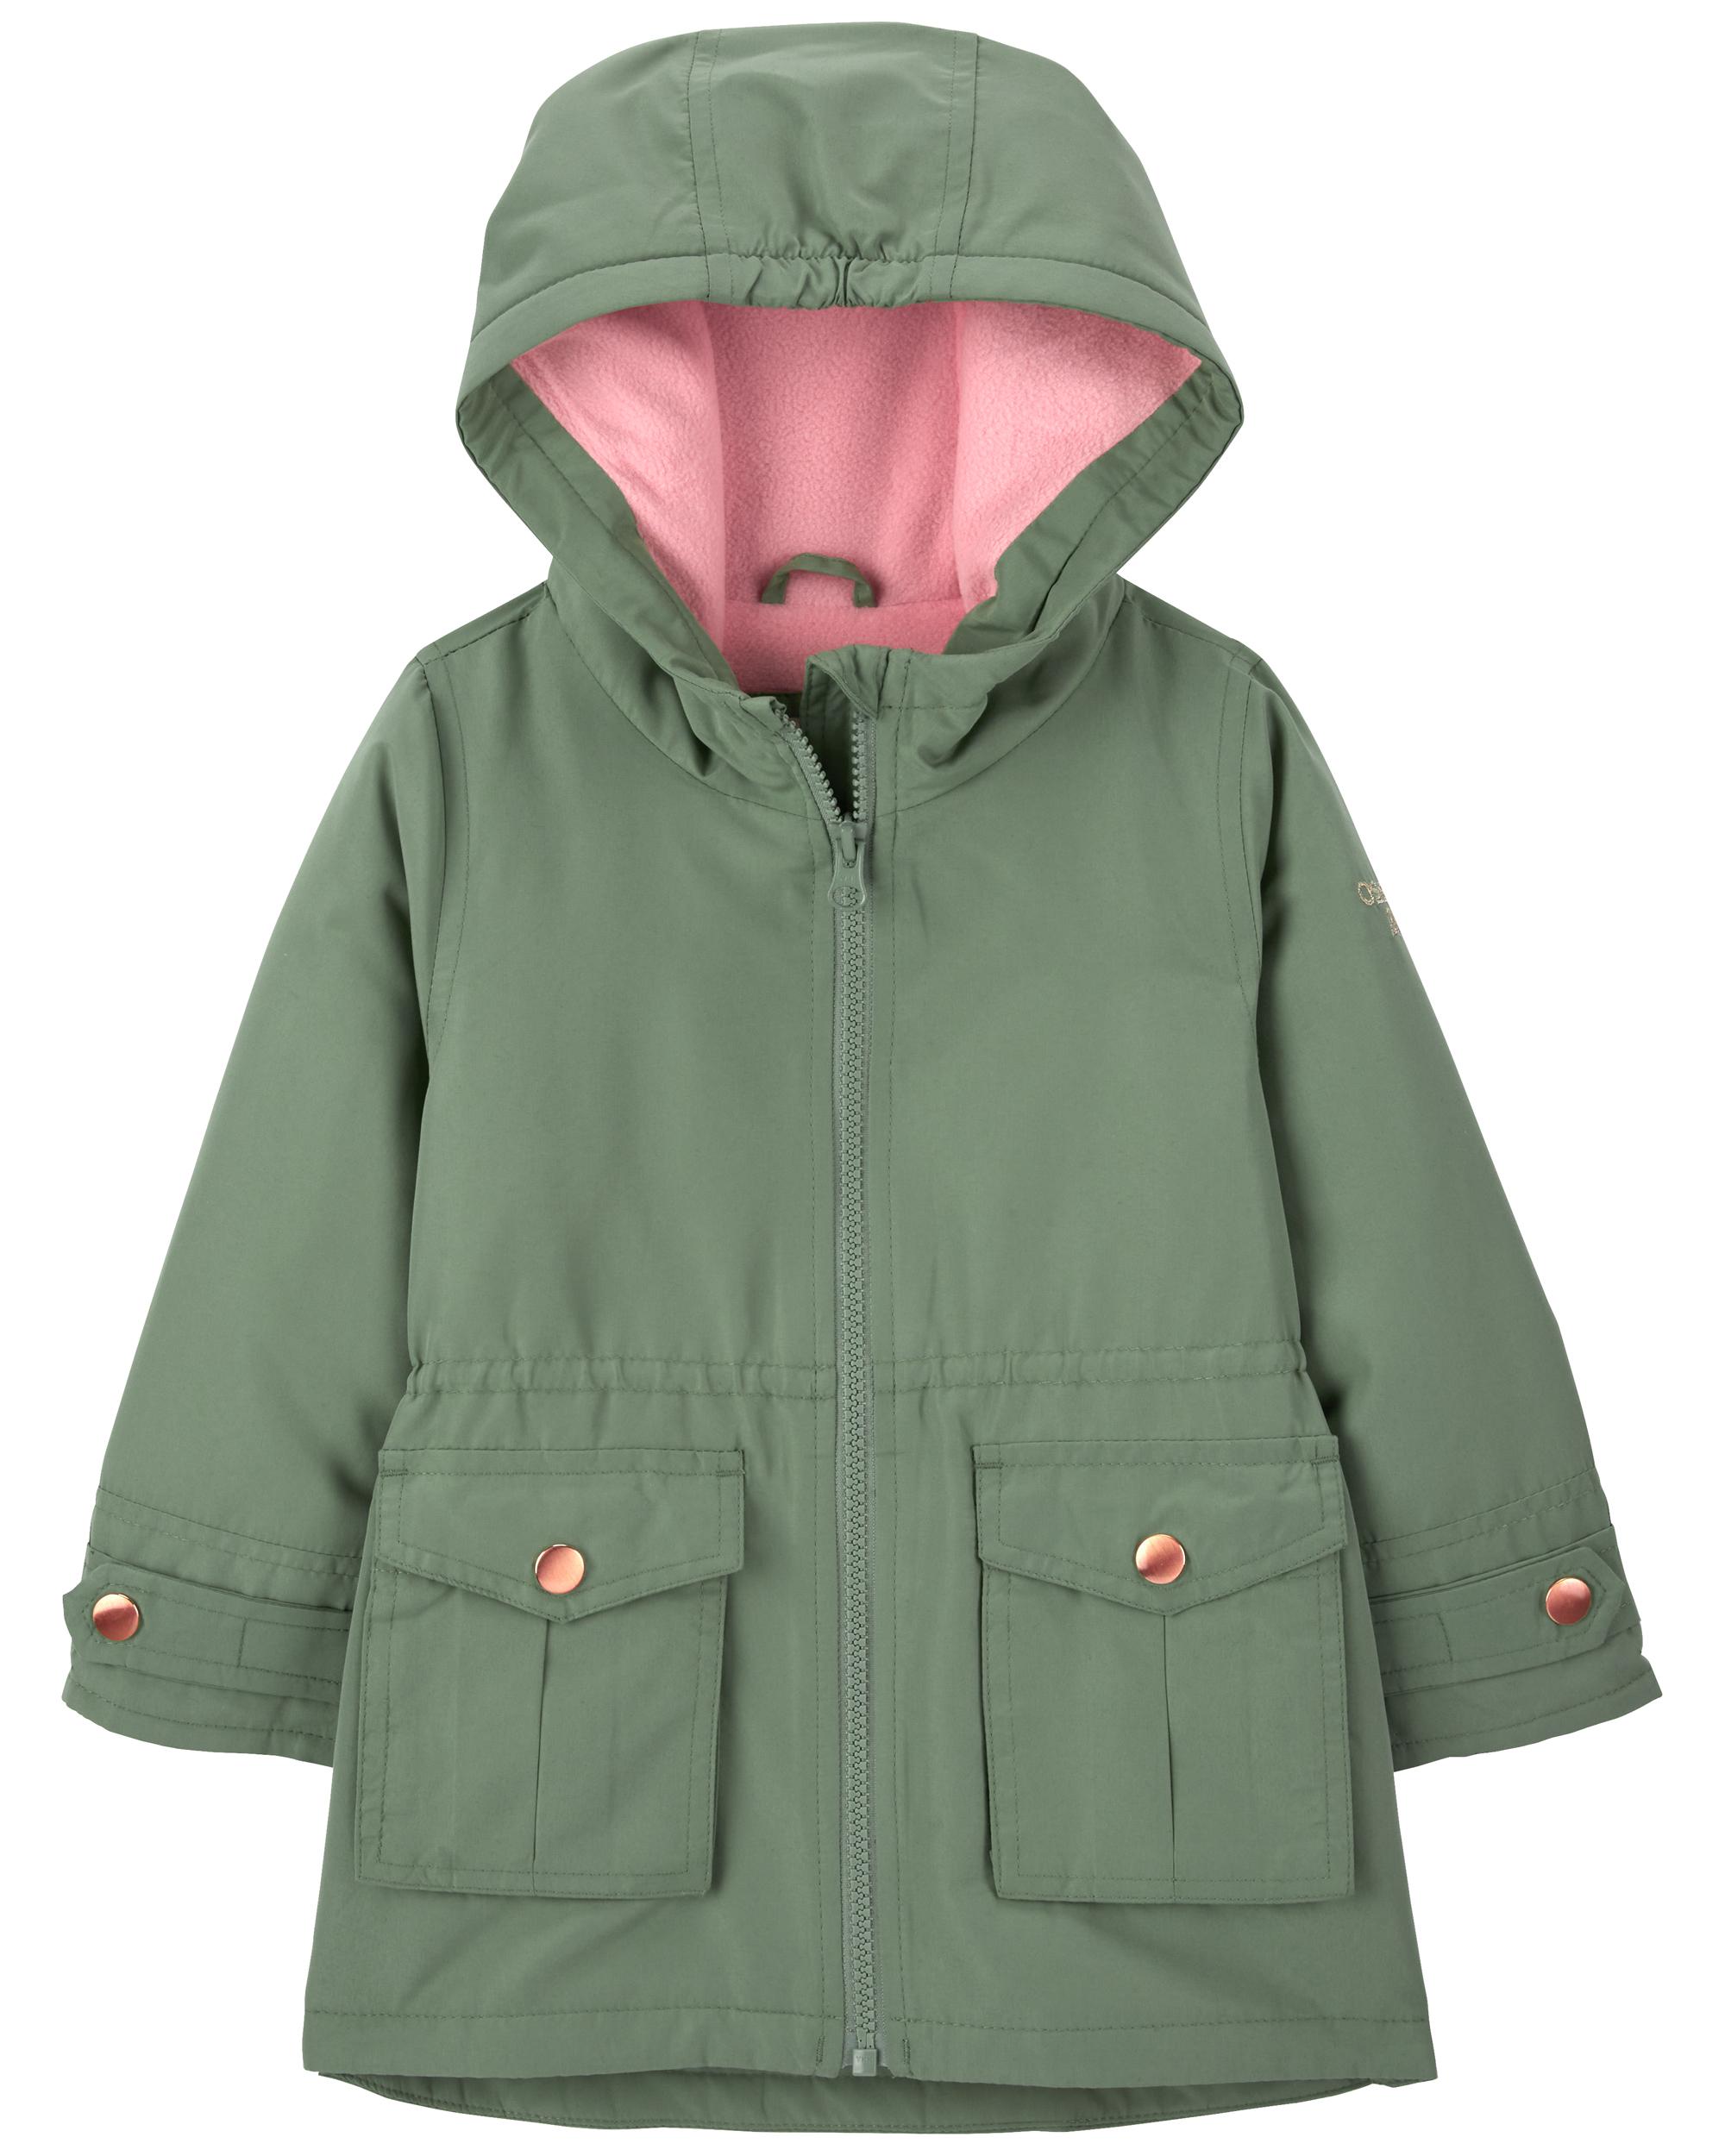 Green Fleece-Lined Jacket | Carter's Oshkosh Canada